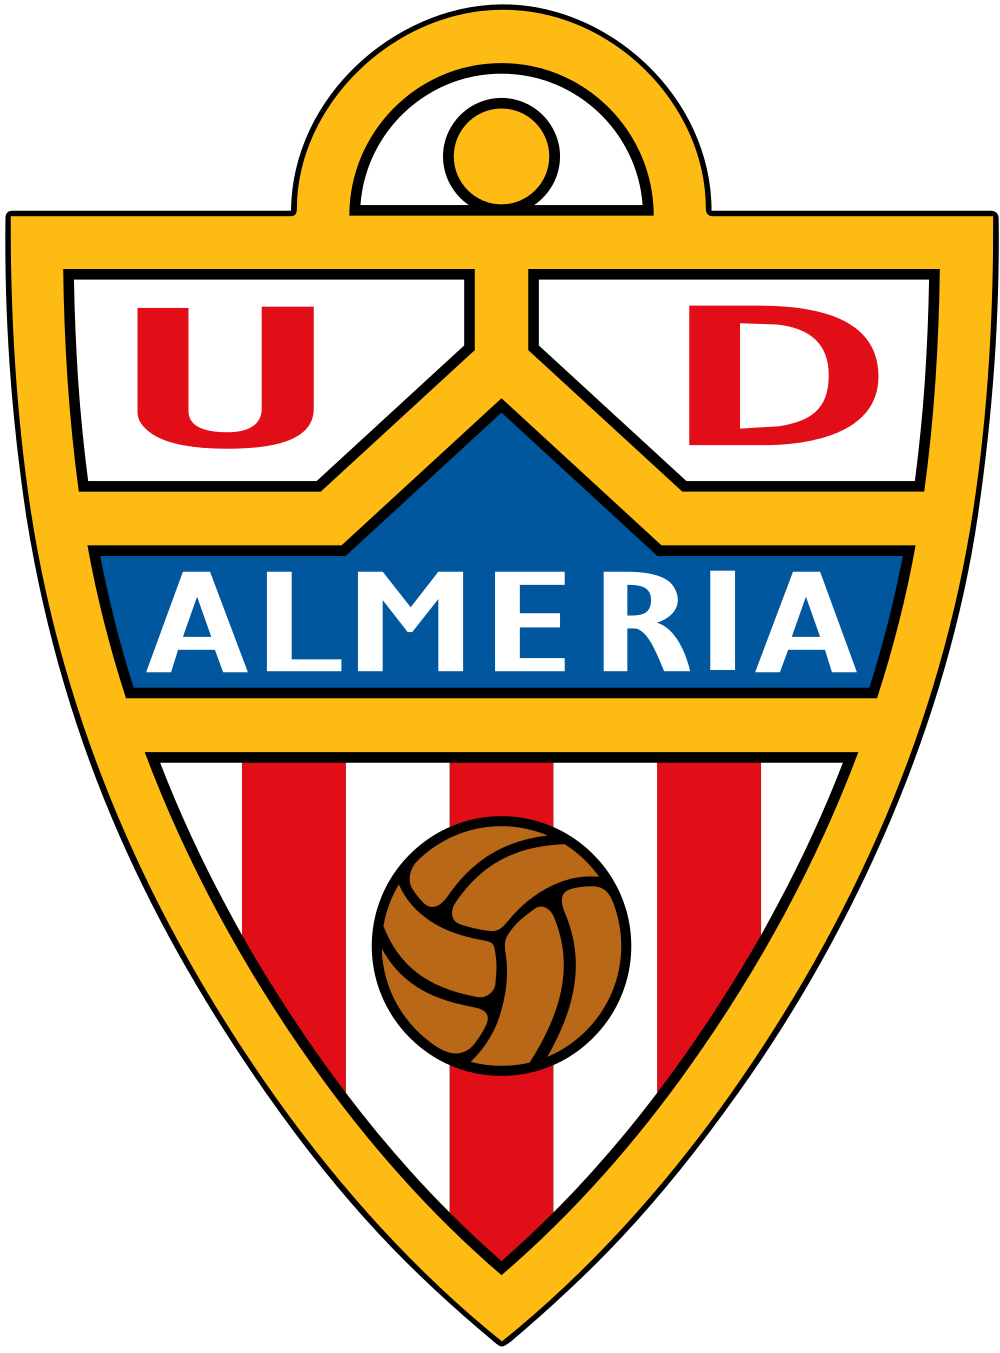 阿爾梅里亞足球俱樂部(阿爾梅里亞隊)